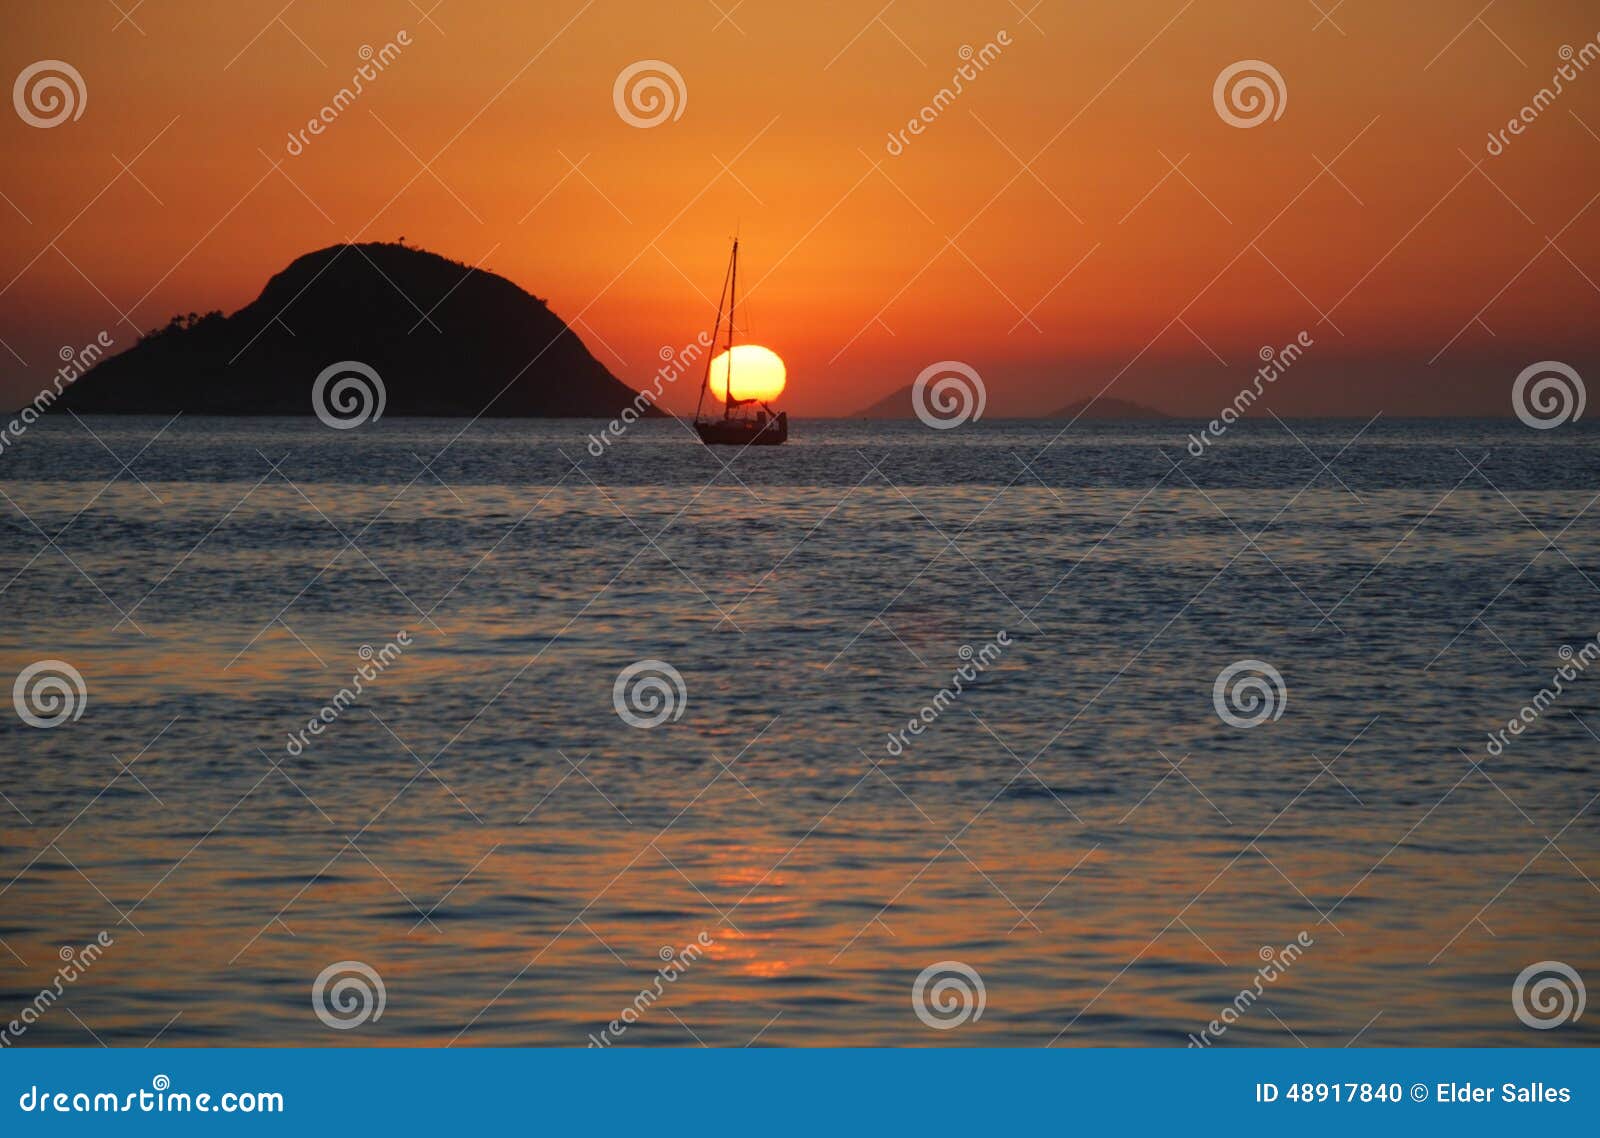 sunset on itaipu beach